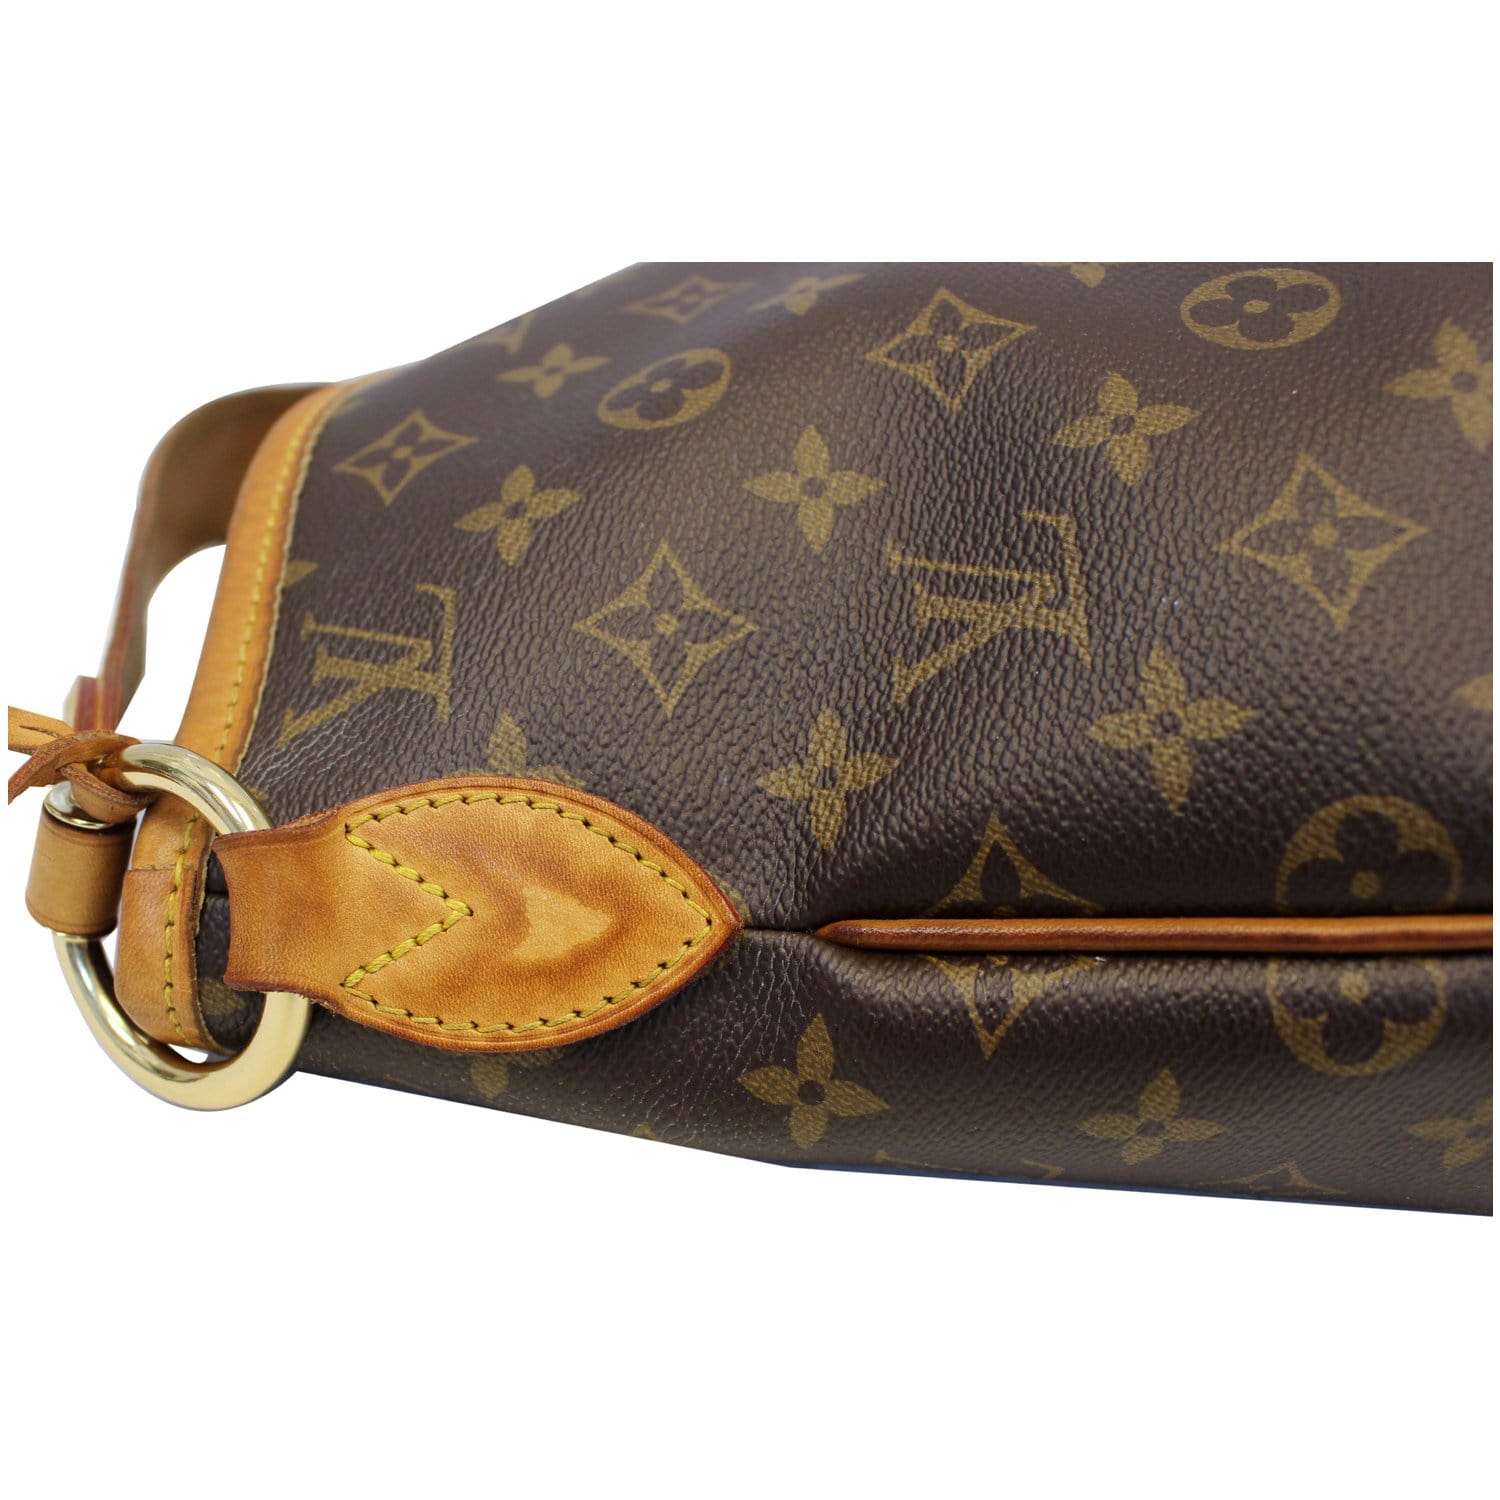 Louis Vuitton Monogram Delightful PM Shoulder Bag M50155